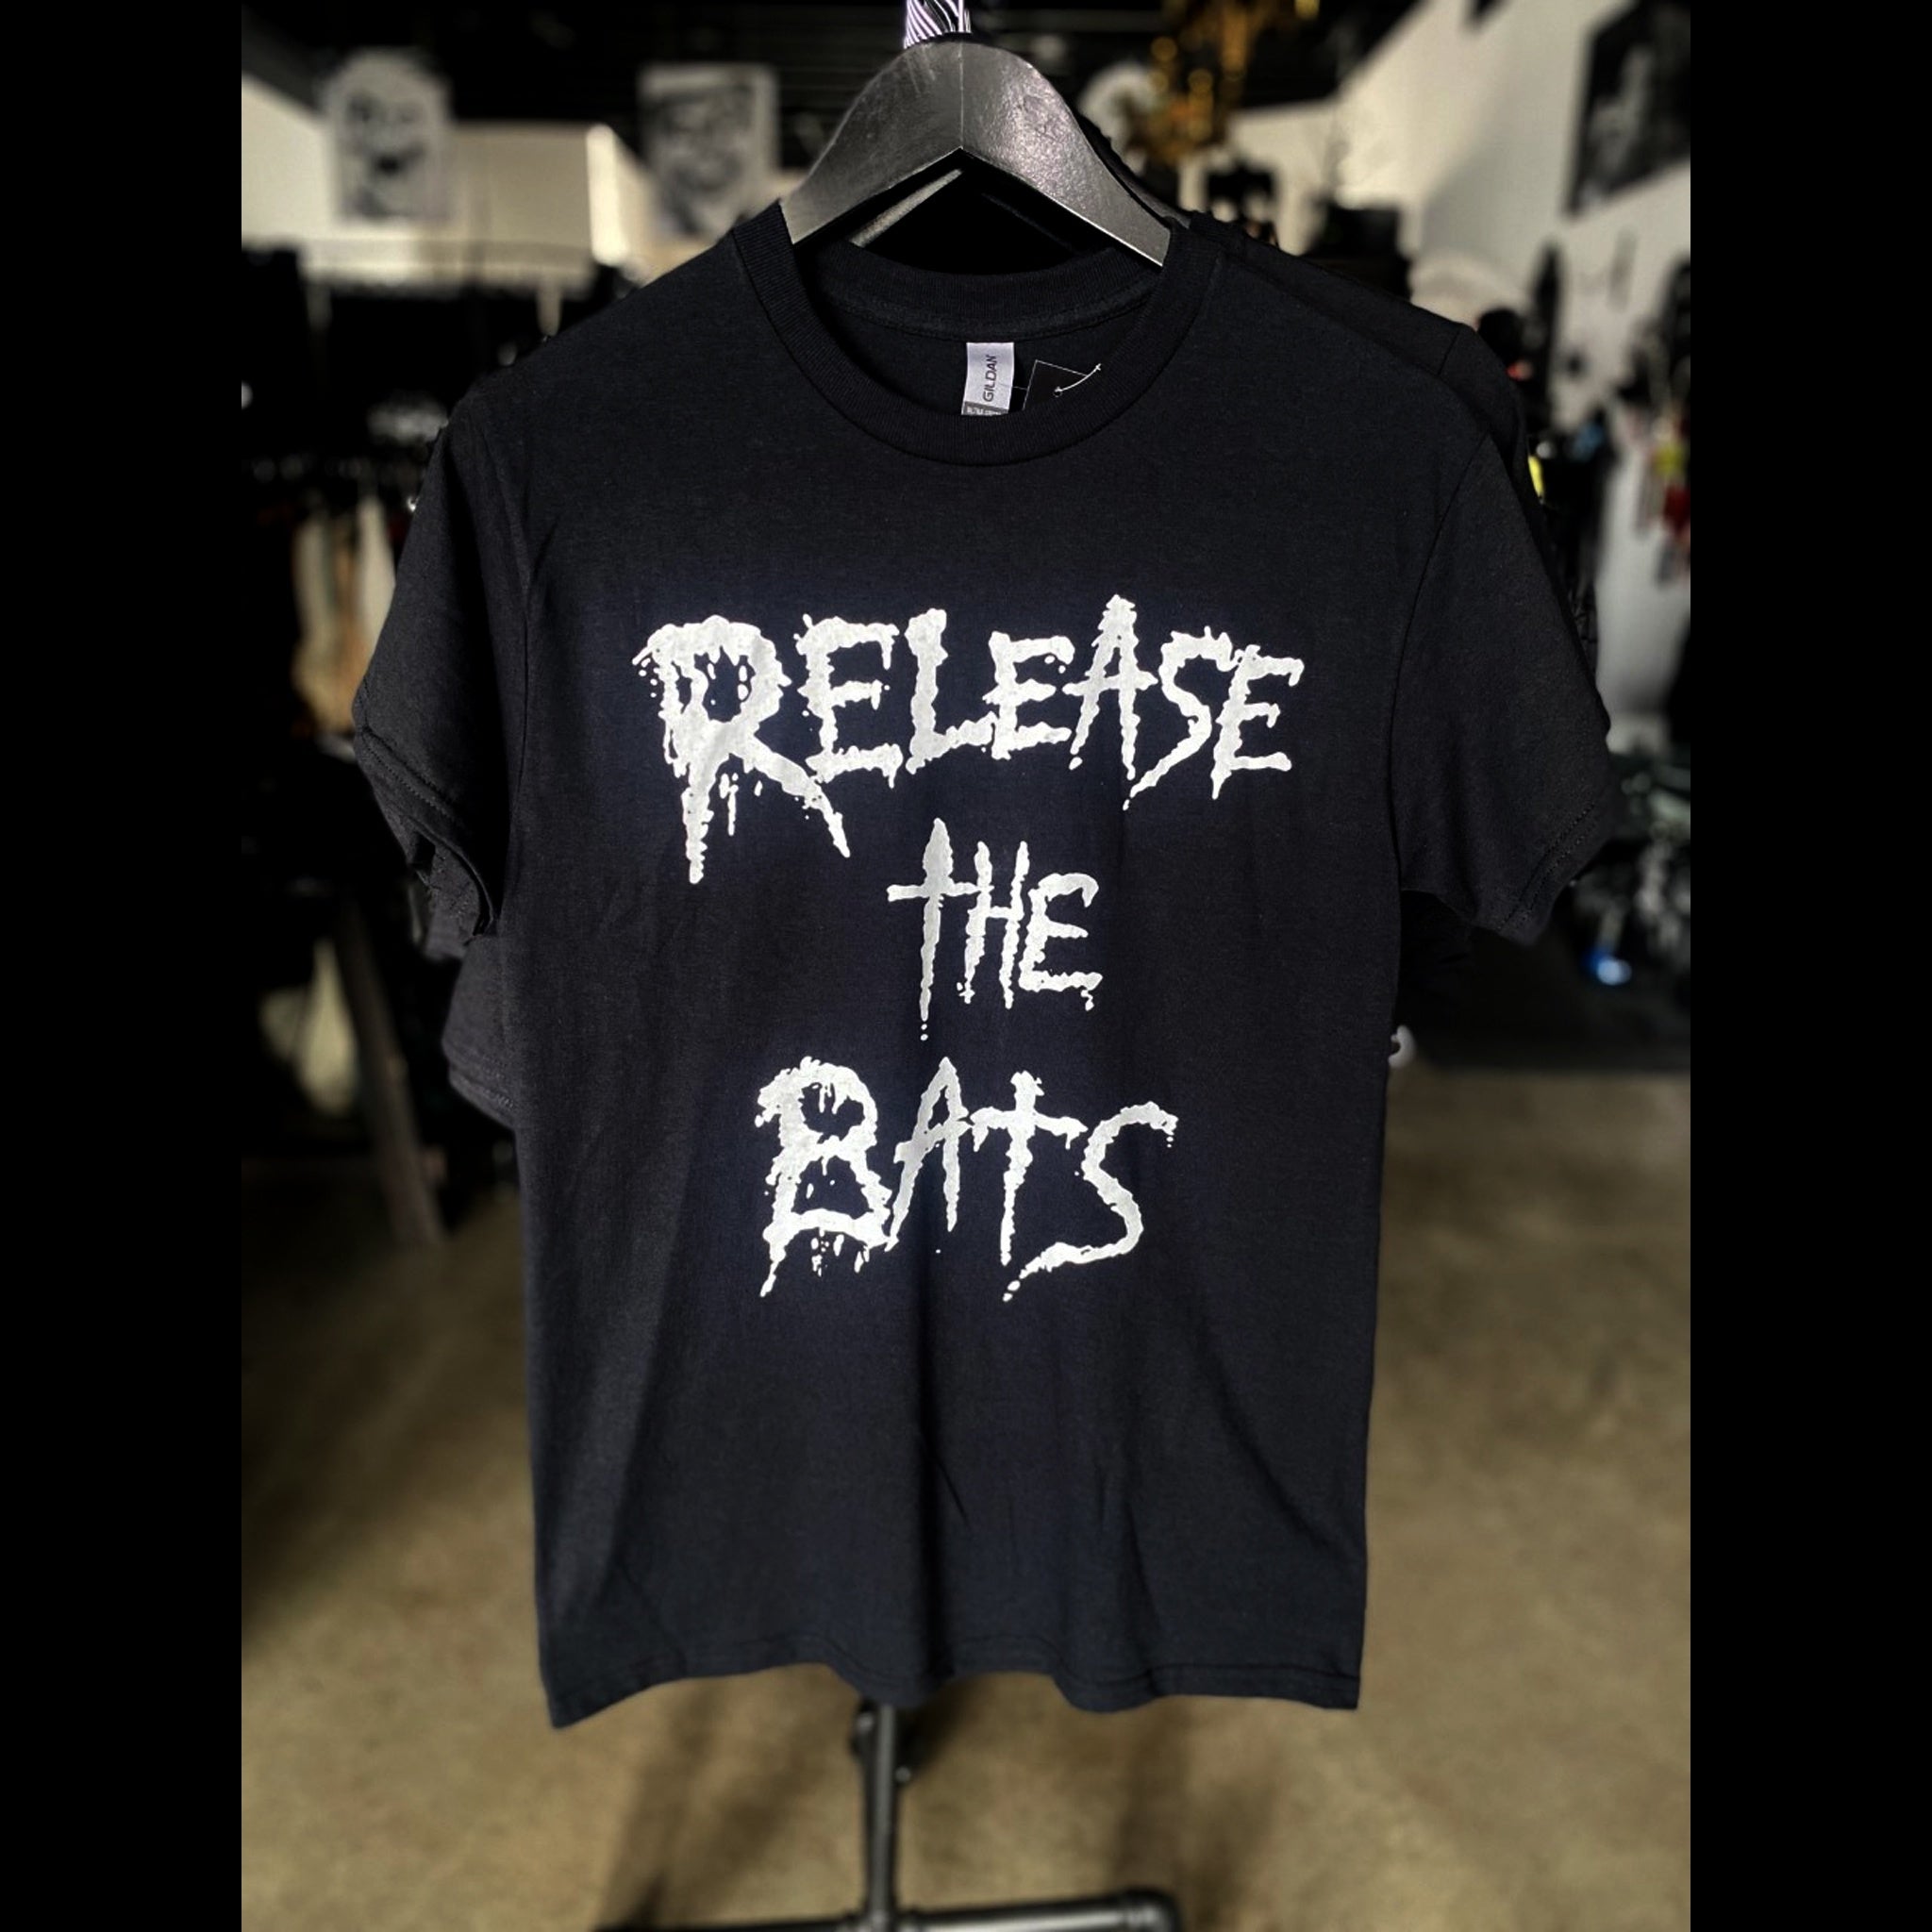 Bad Ass Tshirt Release the Bats